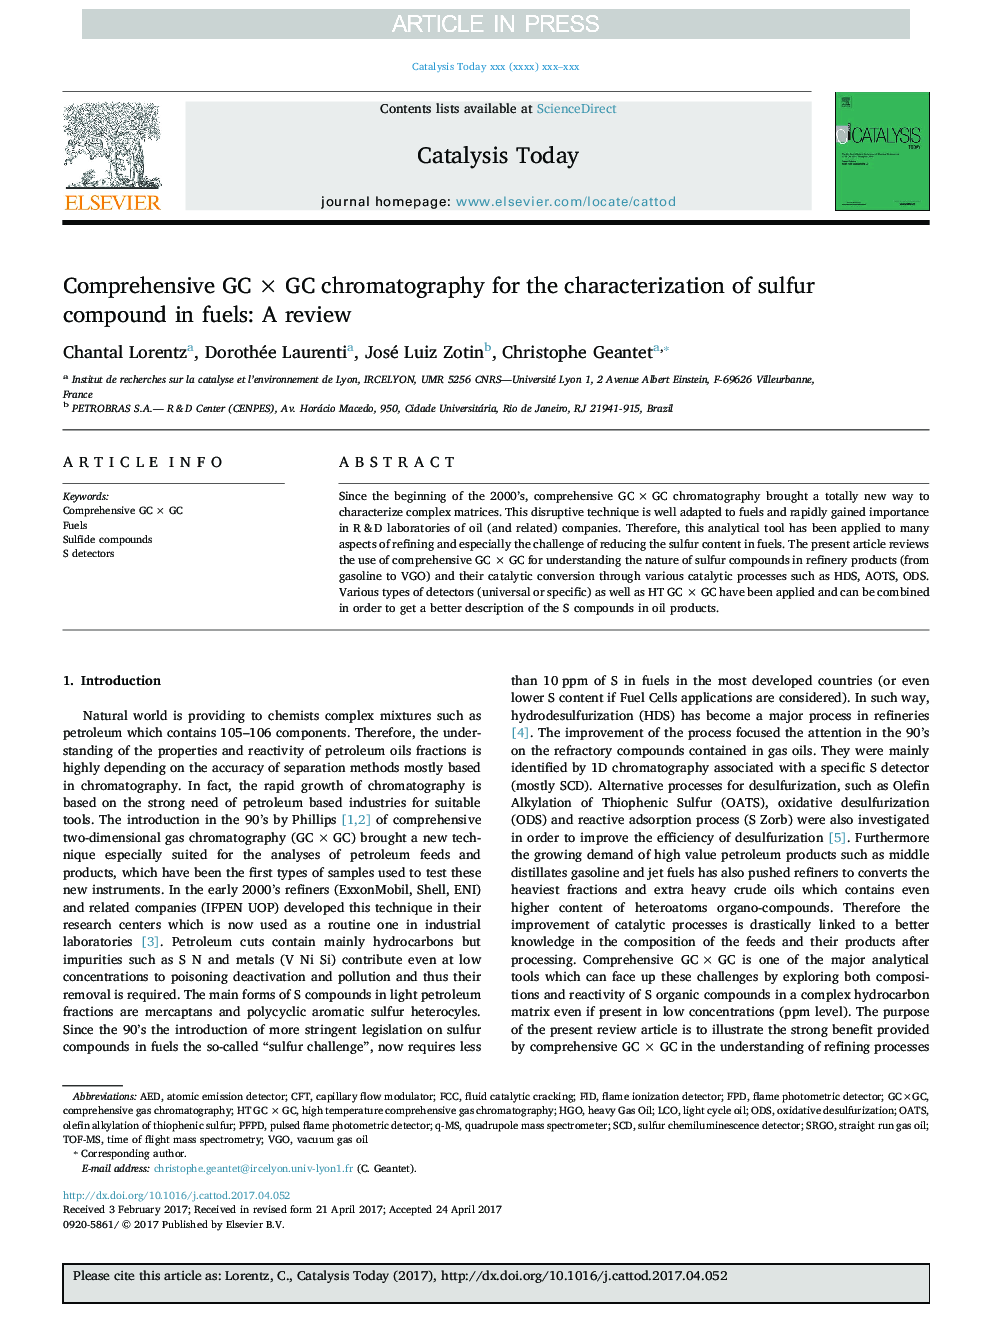 Comprehensive GCÂ ÃÂ GC chromatography for the characterization of sulfur compound in fuels: A review